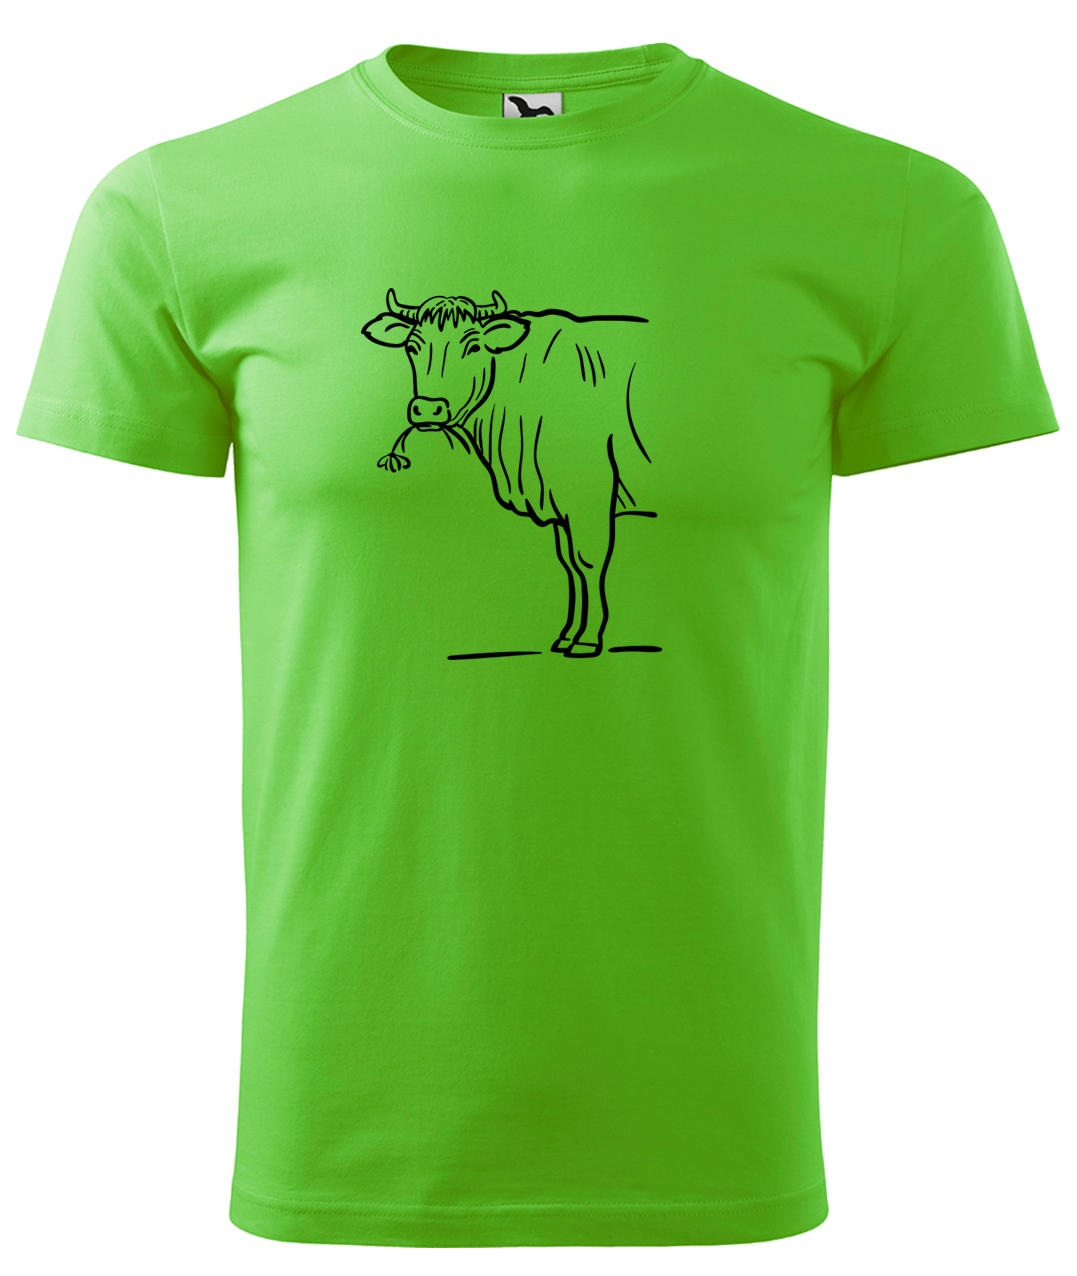 Dětské tričko s krávou - Býk Velikost: 8 let / 134 cm, Barva: Apple Green (92), Délka rukávu: Krátký rukáv